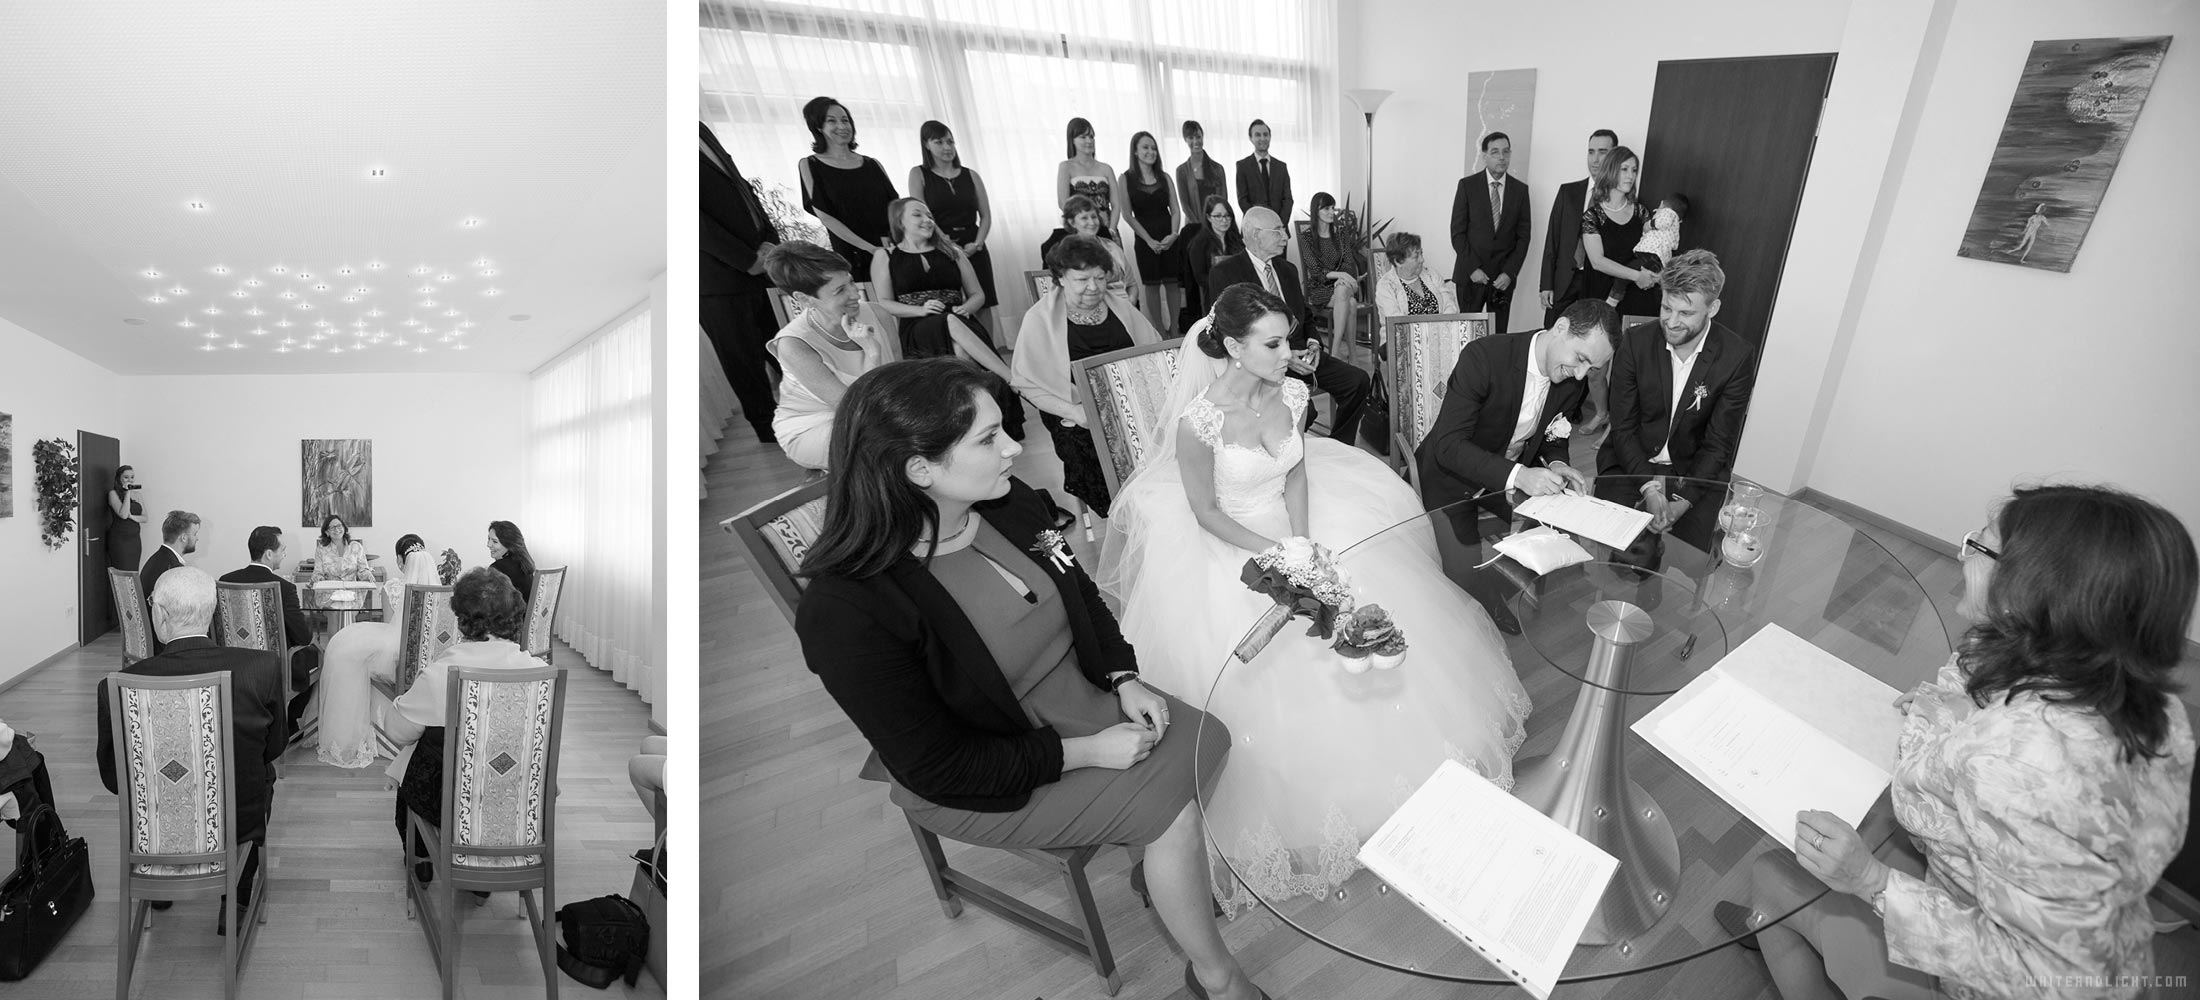 Классическая свадьба – сколько делает фотограф свадьбы свадебных фотографий